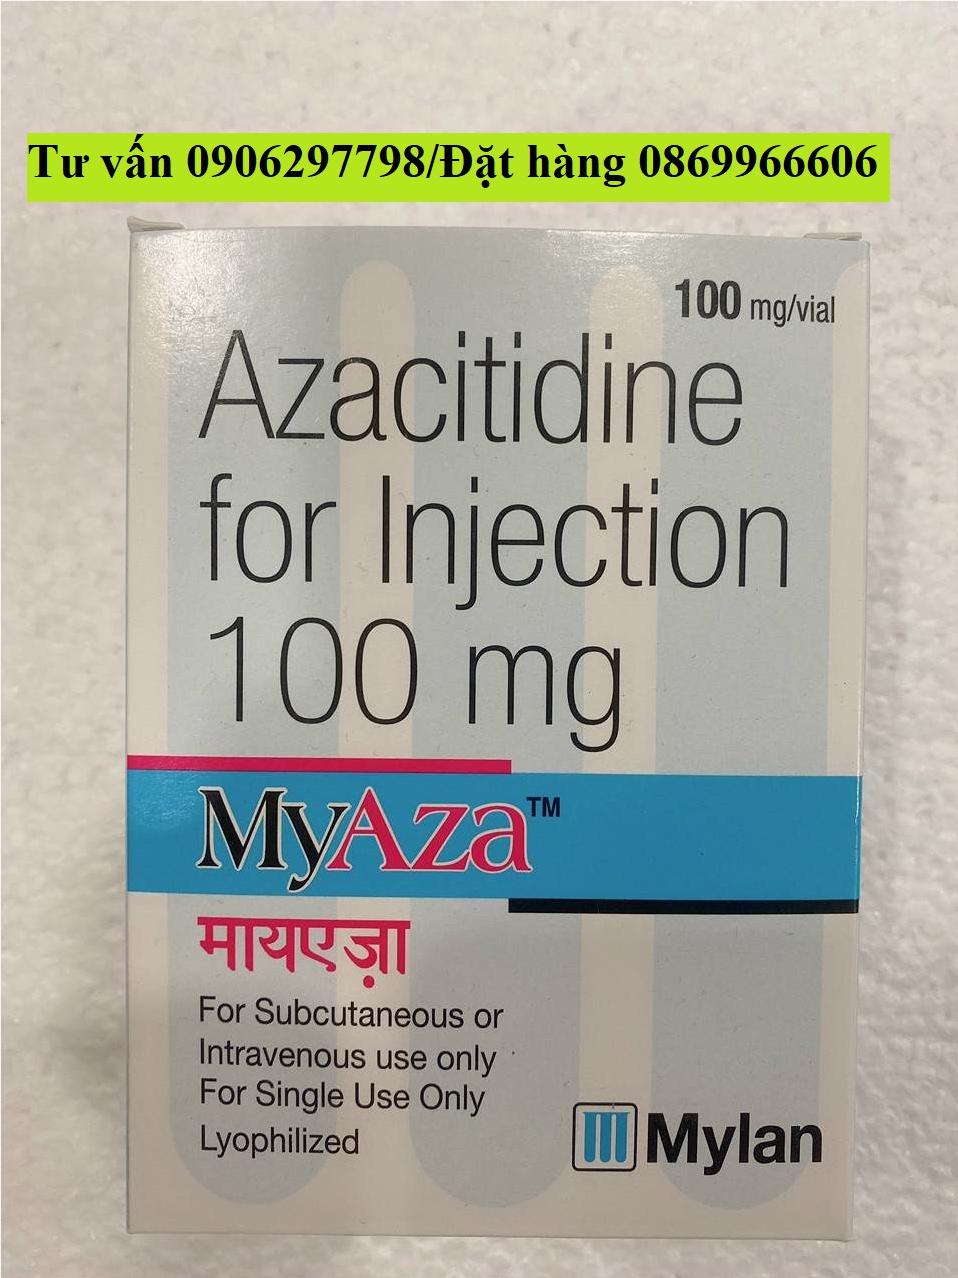 Thuốc Myaza Azacitidine giá bao nhiêu mua ở đâu?